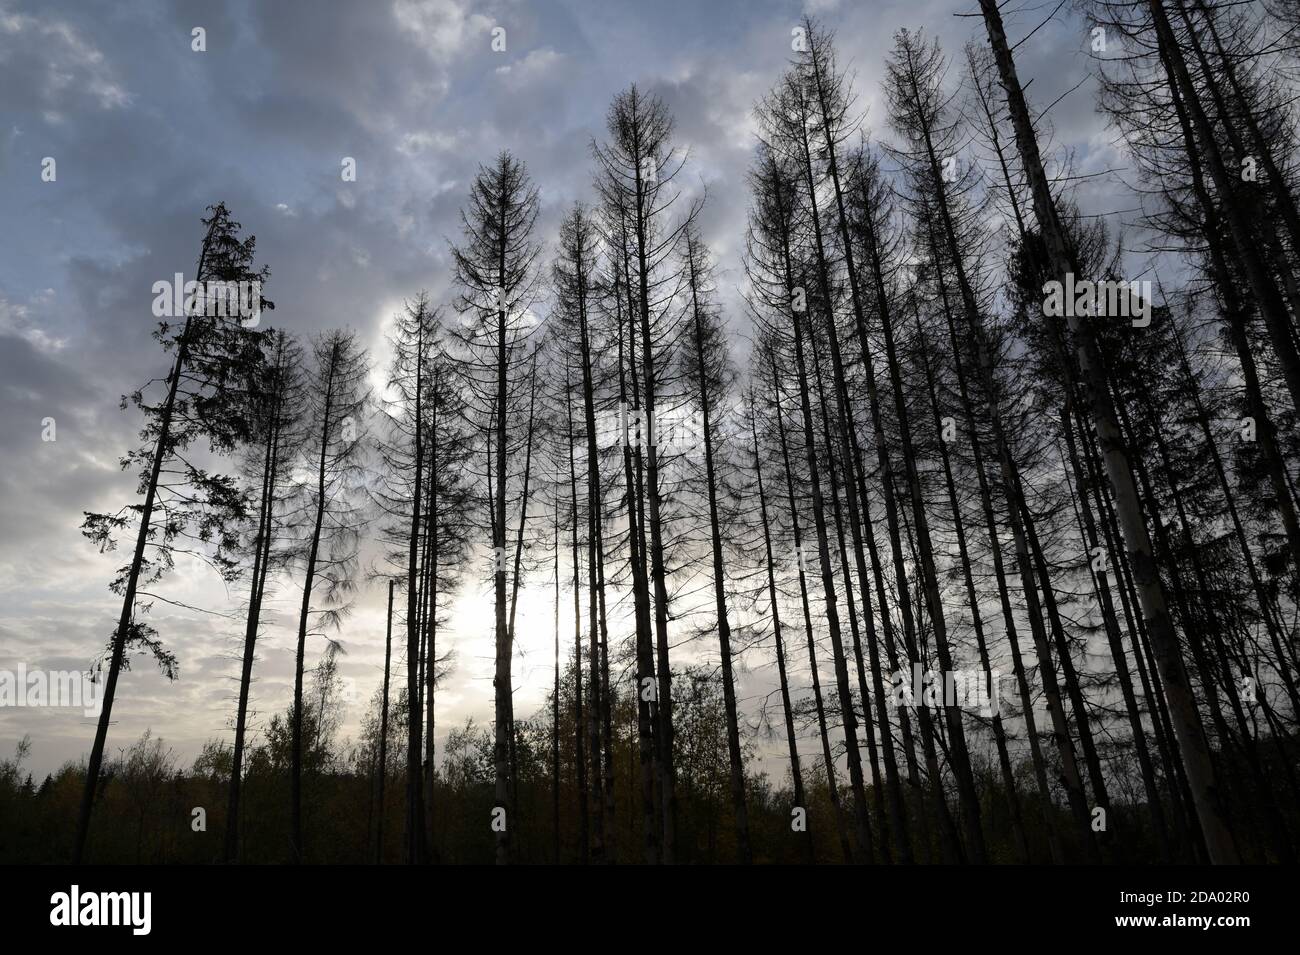 Waldsterben, declive forestal Foto de stock